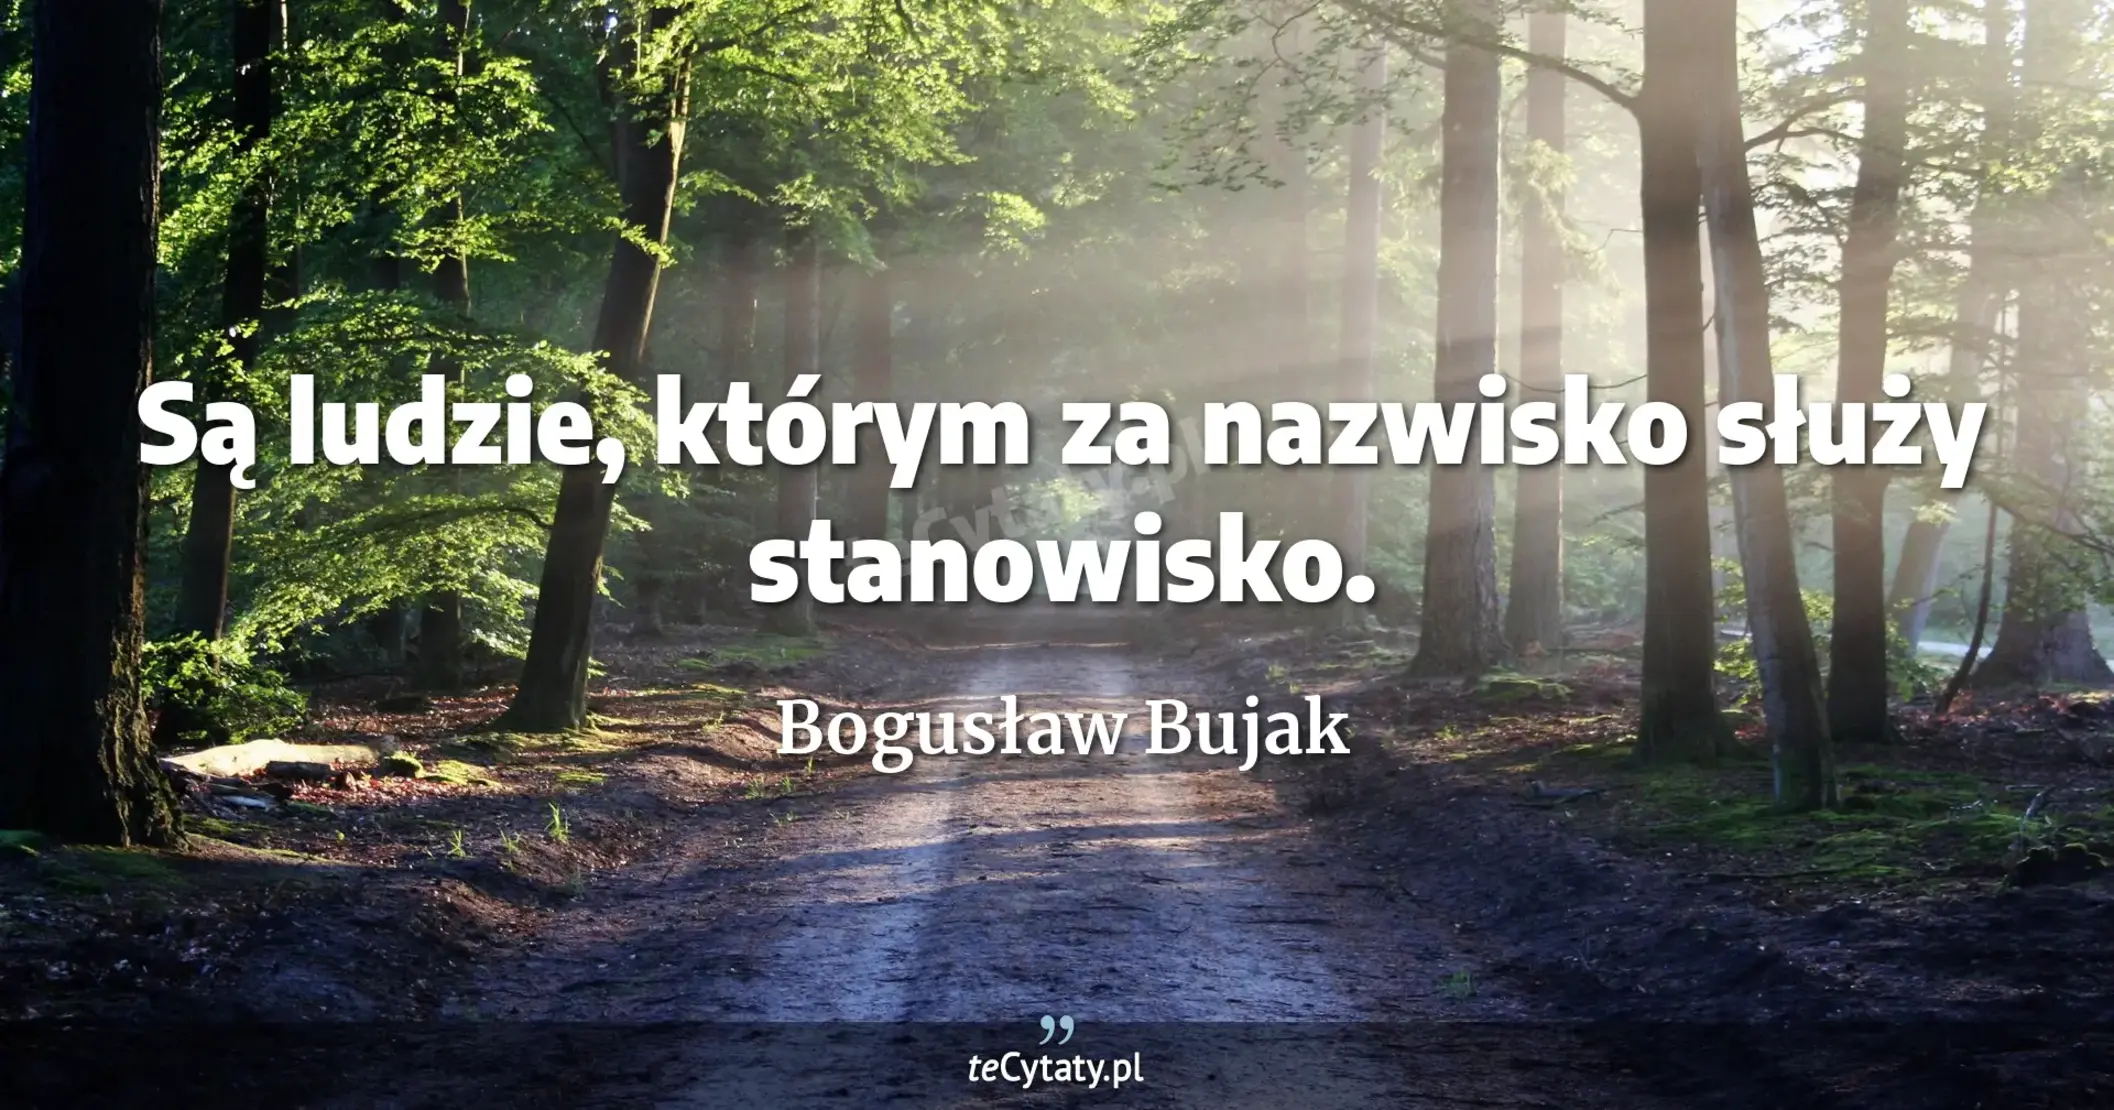 Są ludzie, którym za nazwisko służy stanowisko. - Bogusław Bujak